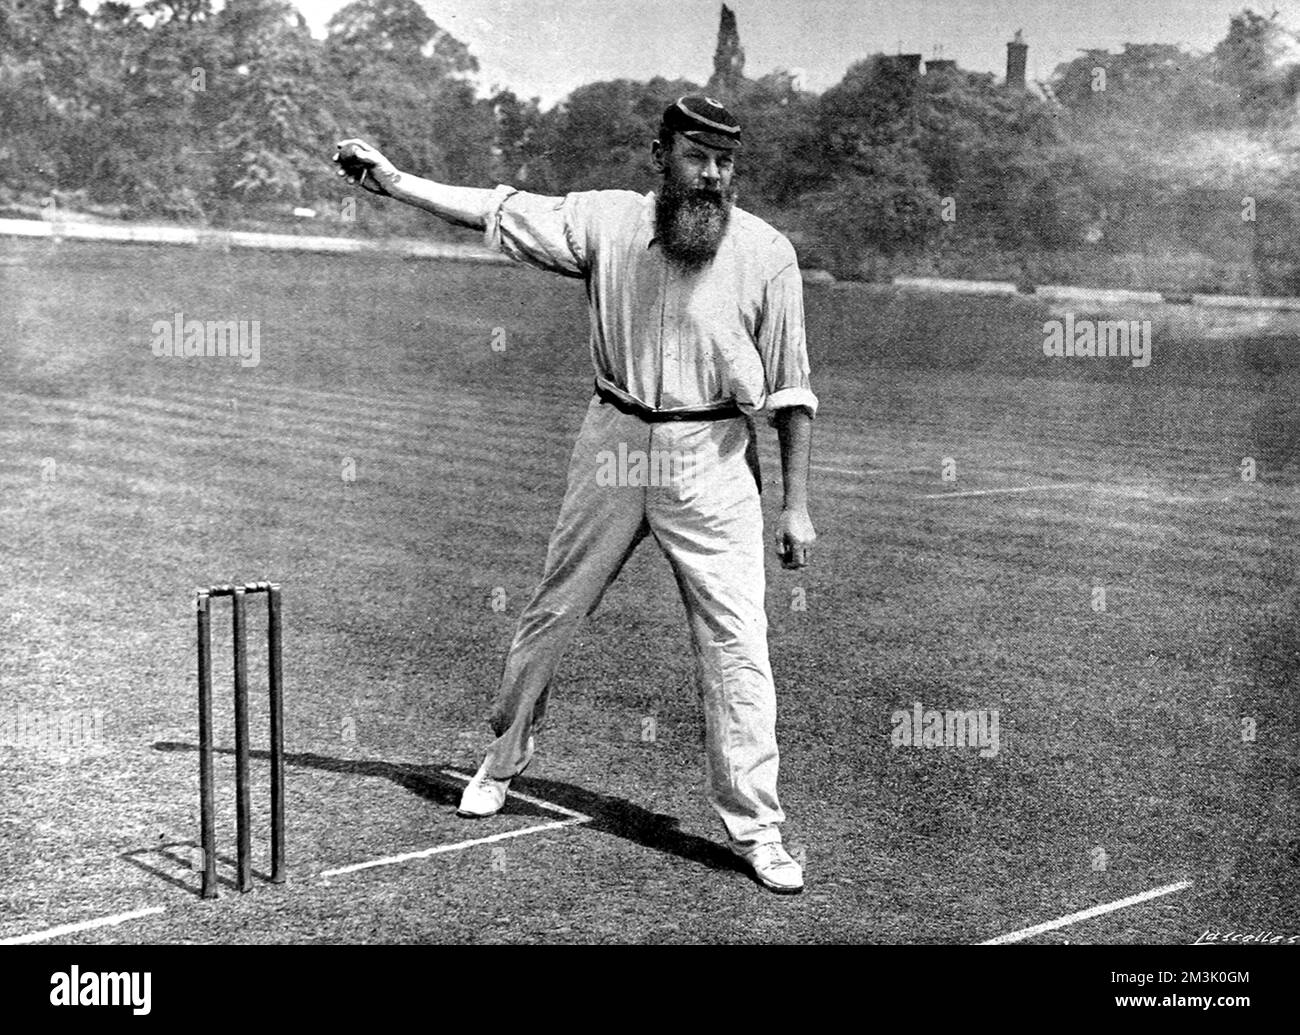 Dr. William Gilbert Grace (1848 - 1915), bowling al Crystal Palace Cricket Ground, Londra. Grace era probabilmente il più bel cricketer della sua epoca, segnando 126 secoli di prima classe e prendendo 2876 wickets, giocando per l'Inghilterra e Gloucestershire. Foto Stock